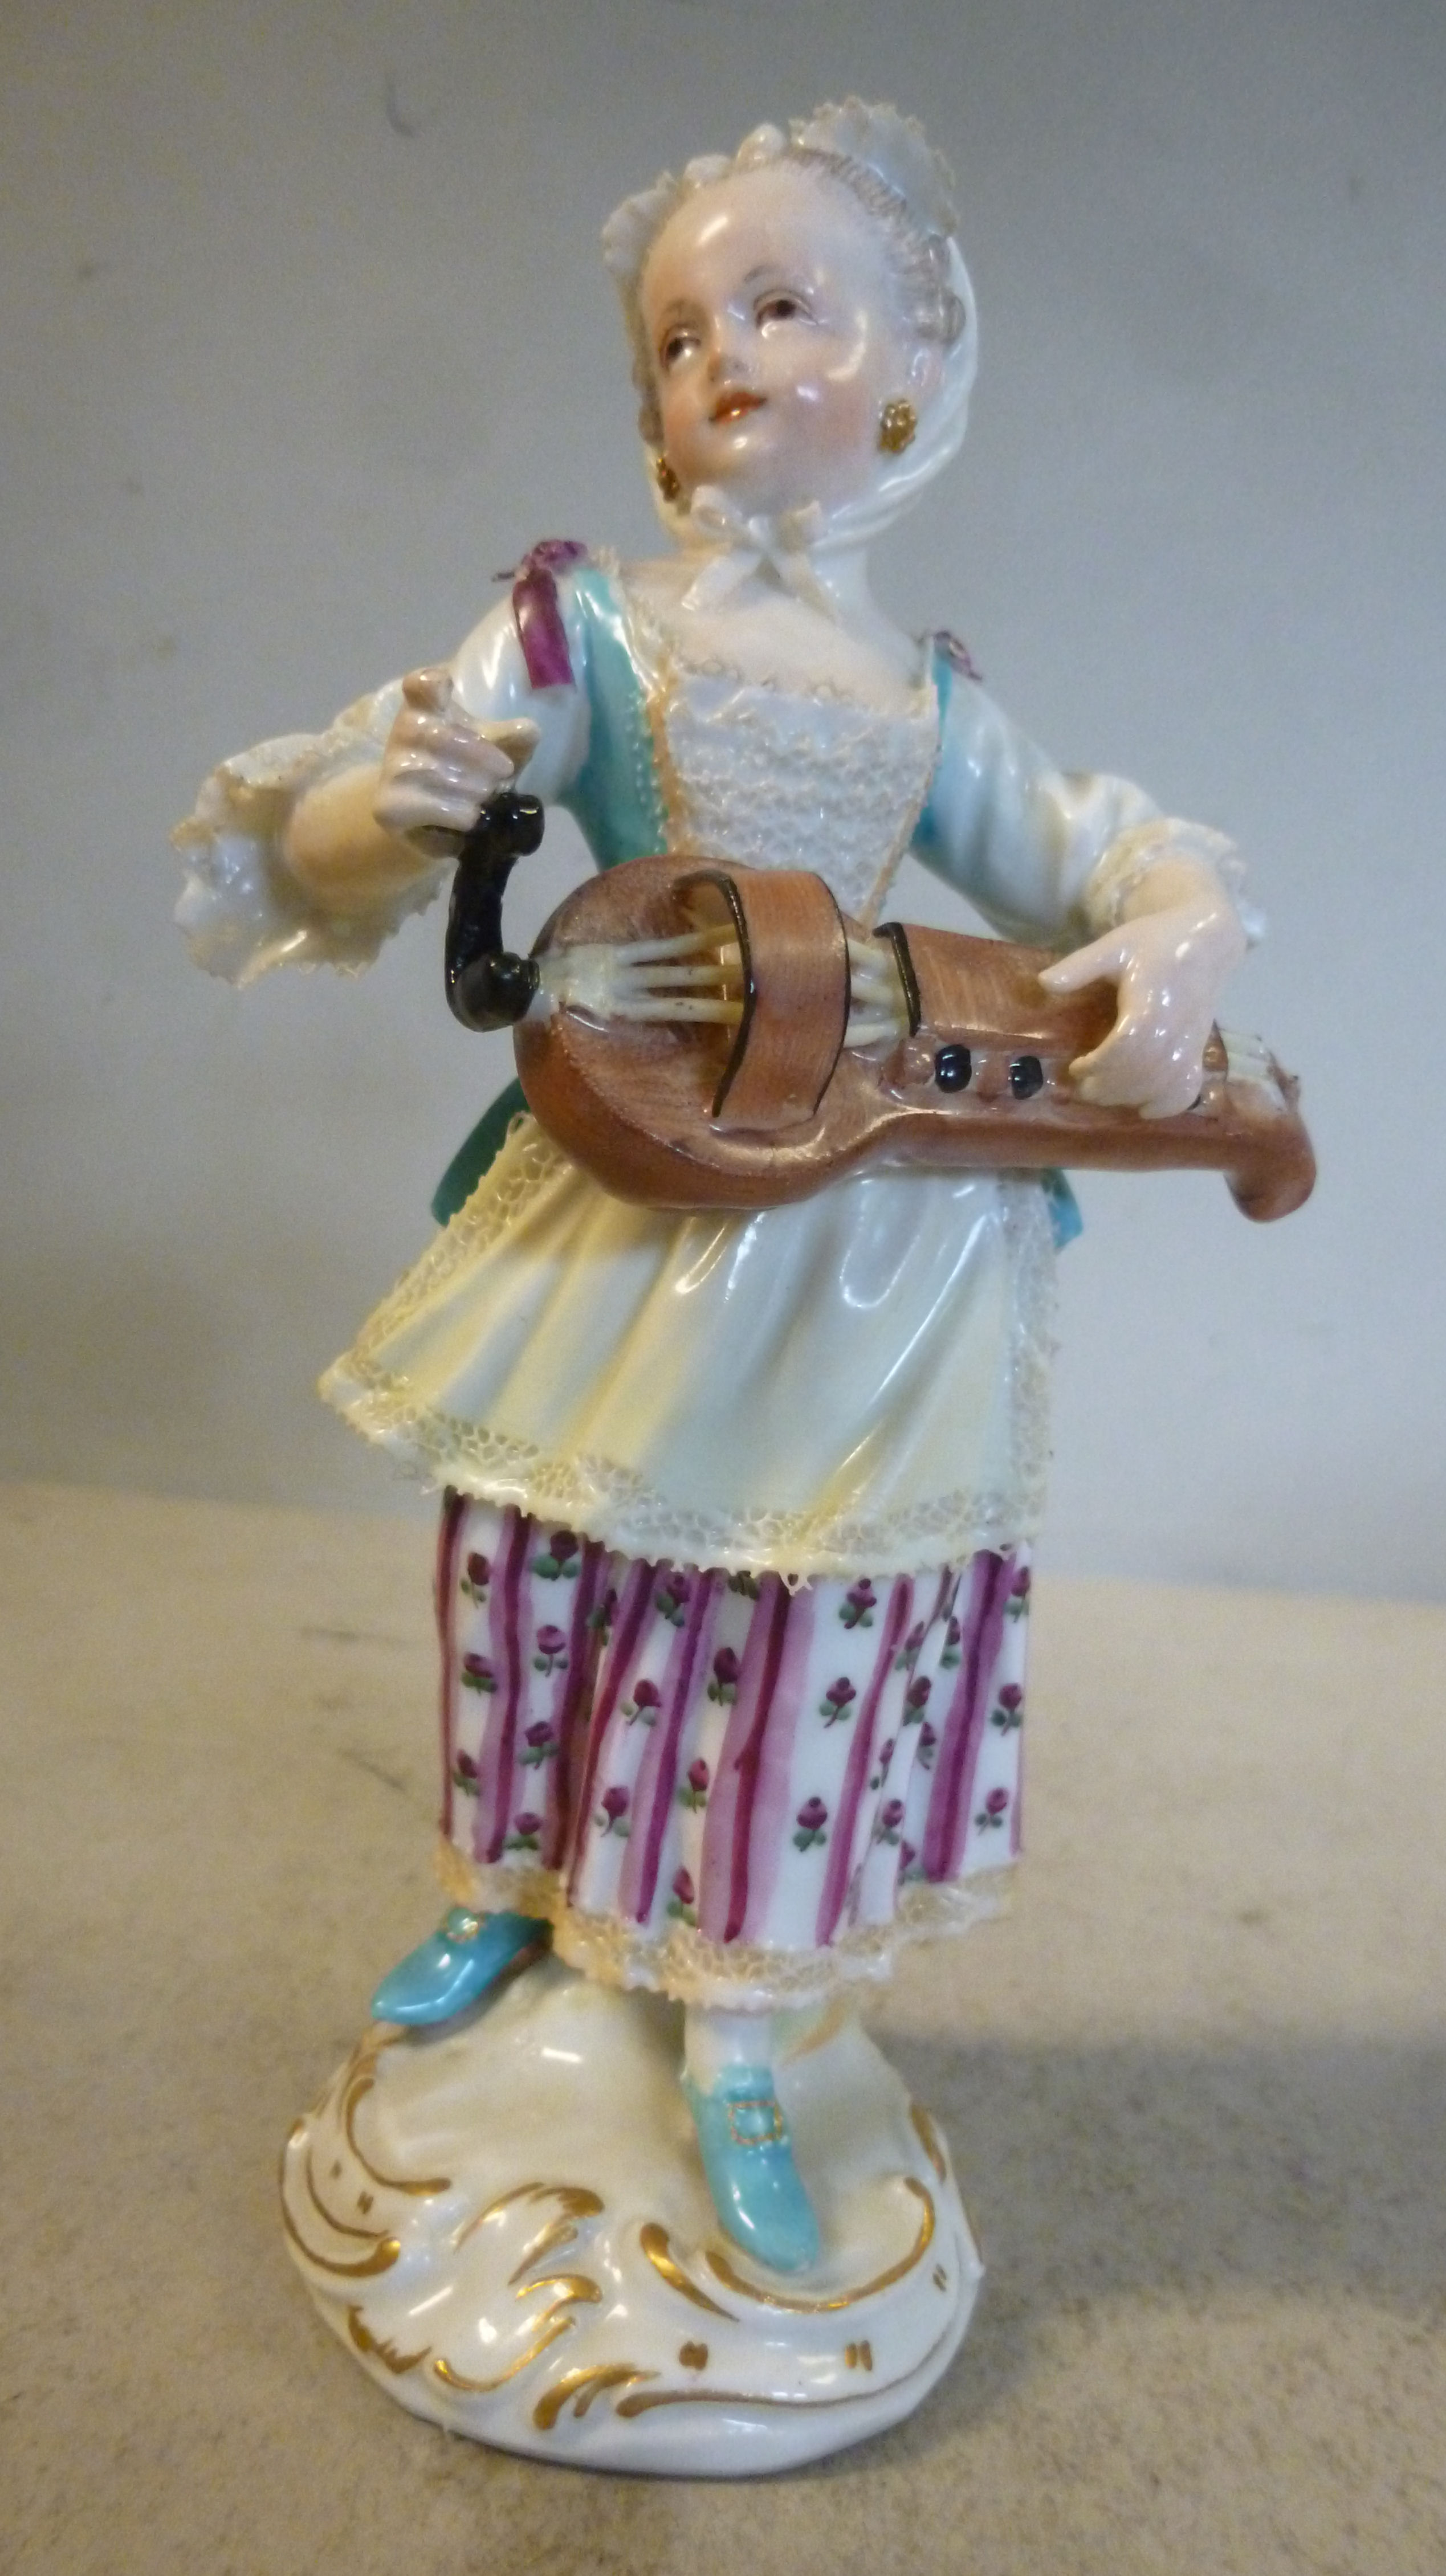 A mid 18thC Meissen porcelain standing figure by Acier, No.